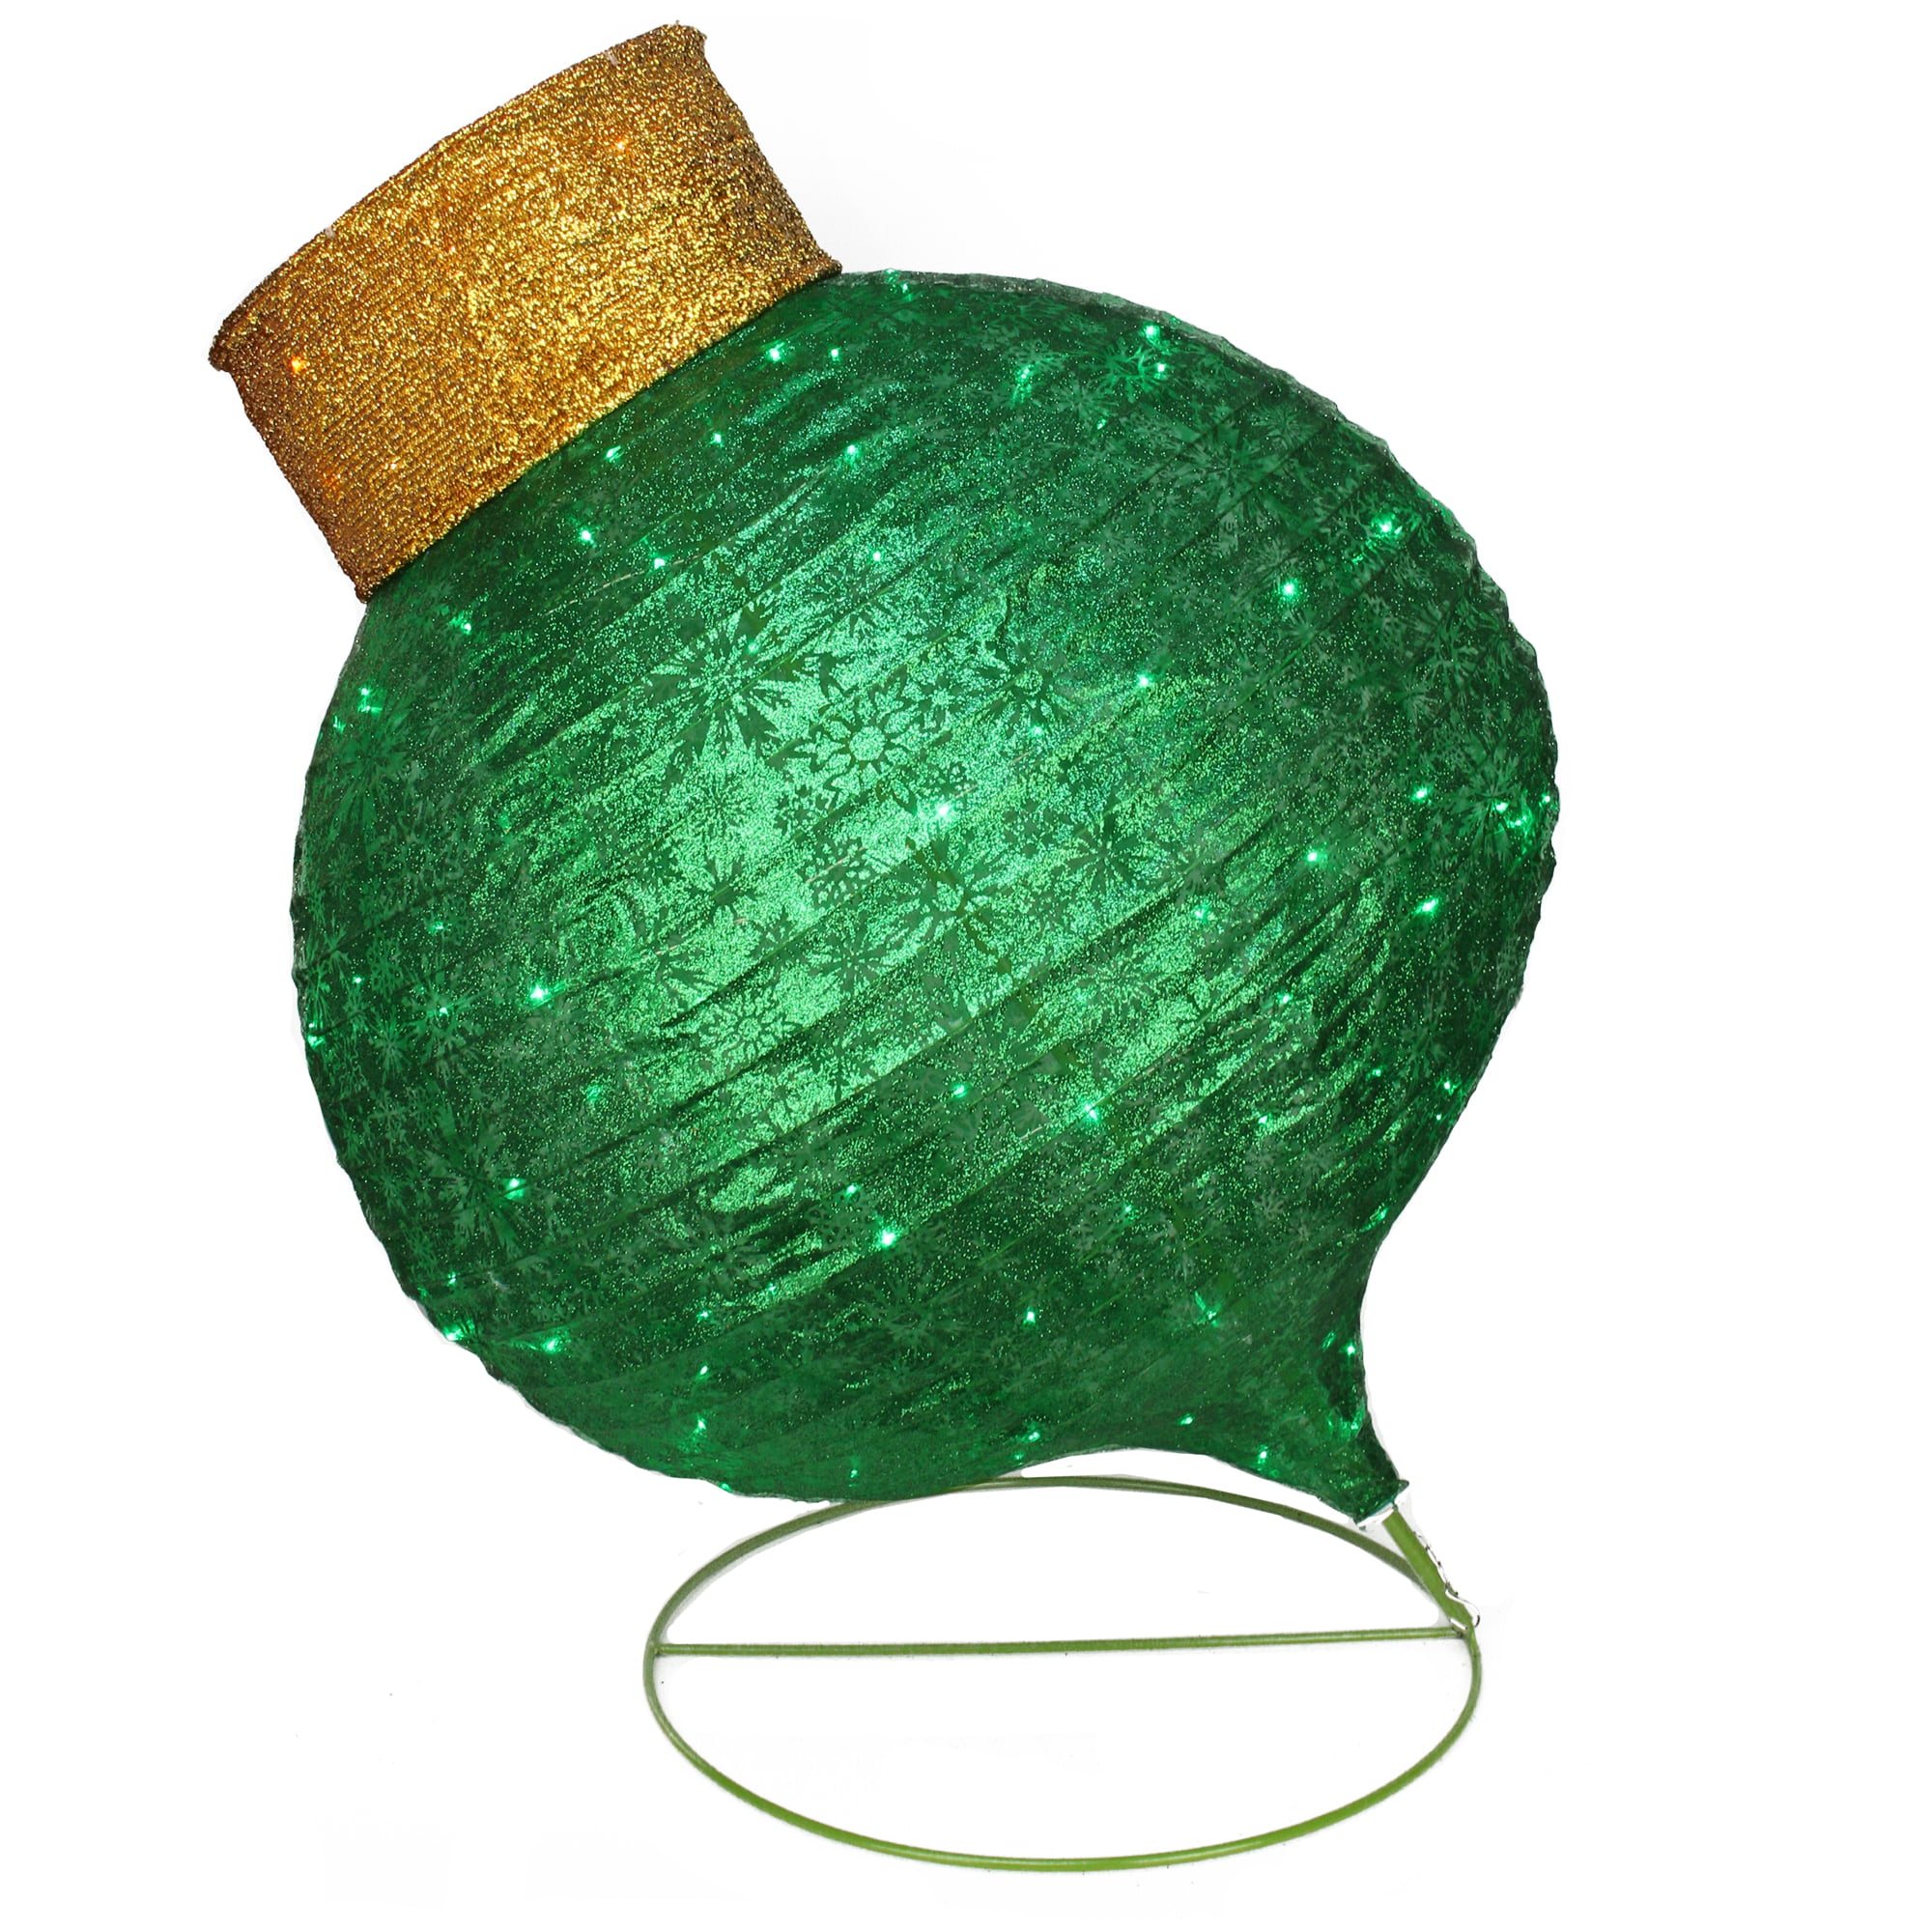 6” Green Velvet Onion Ornament